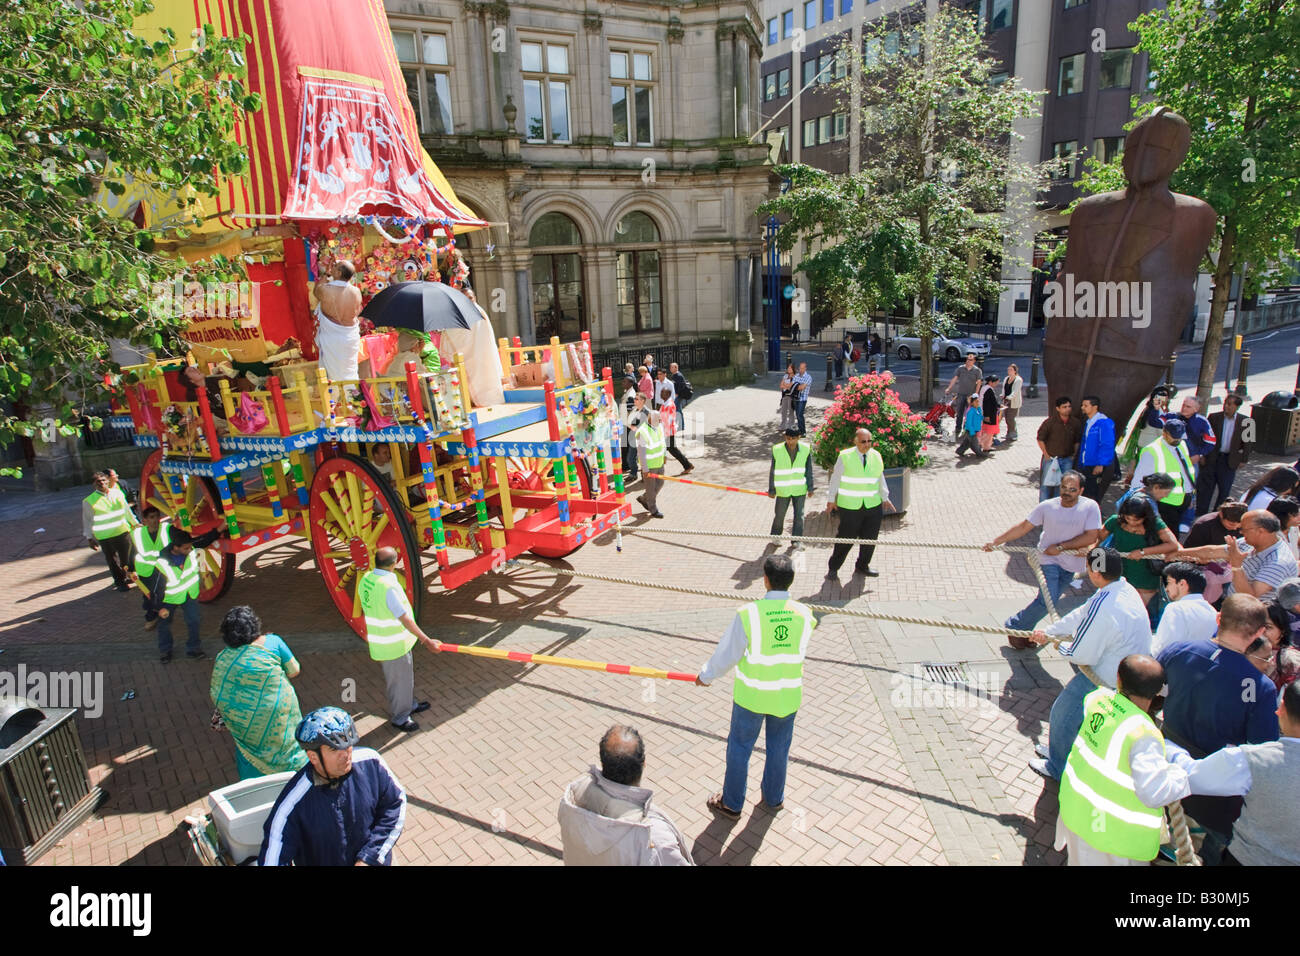 La foule et le char au festival de Rathayatra célébré à Birmingham, Royaume-Uni Banque D'Images